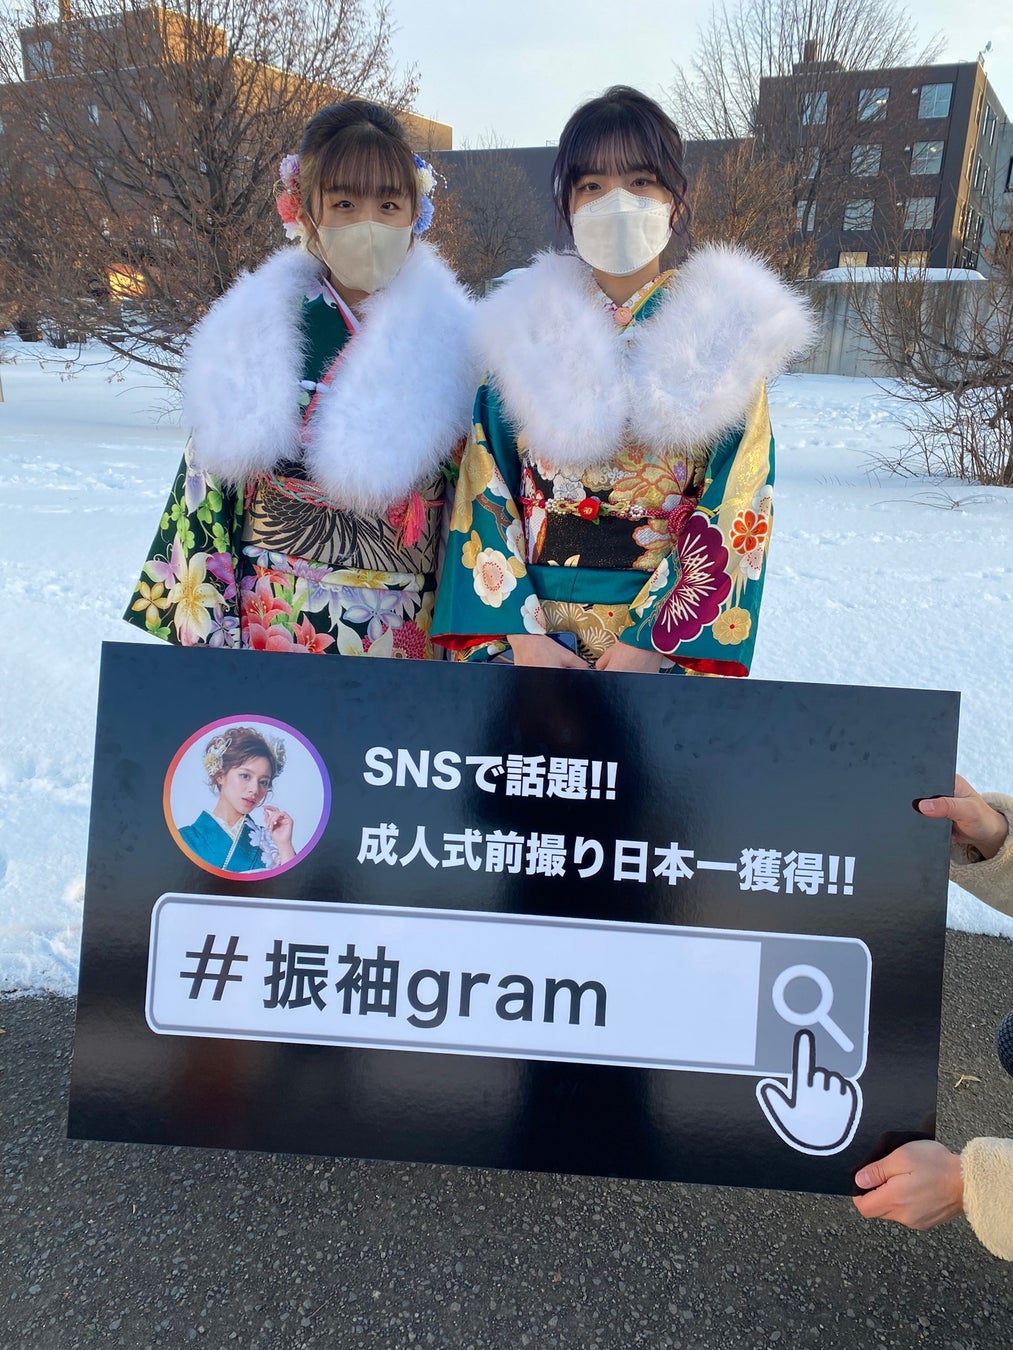 地元白石区の新成人の笑顔を残したい『#振袖gram』北海道札幌市白石区振袖記念写真プロジェクト企画のサブ画像5